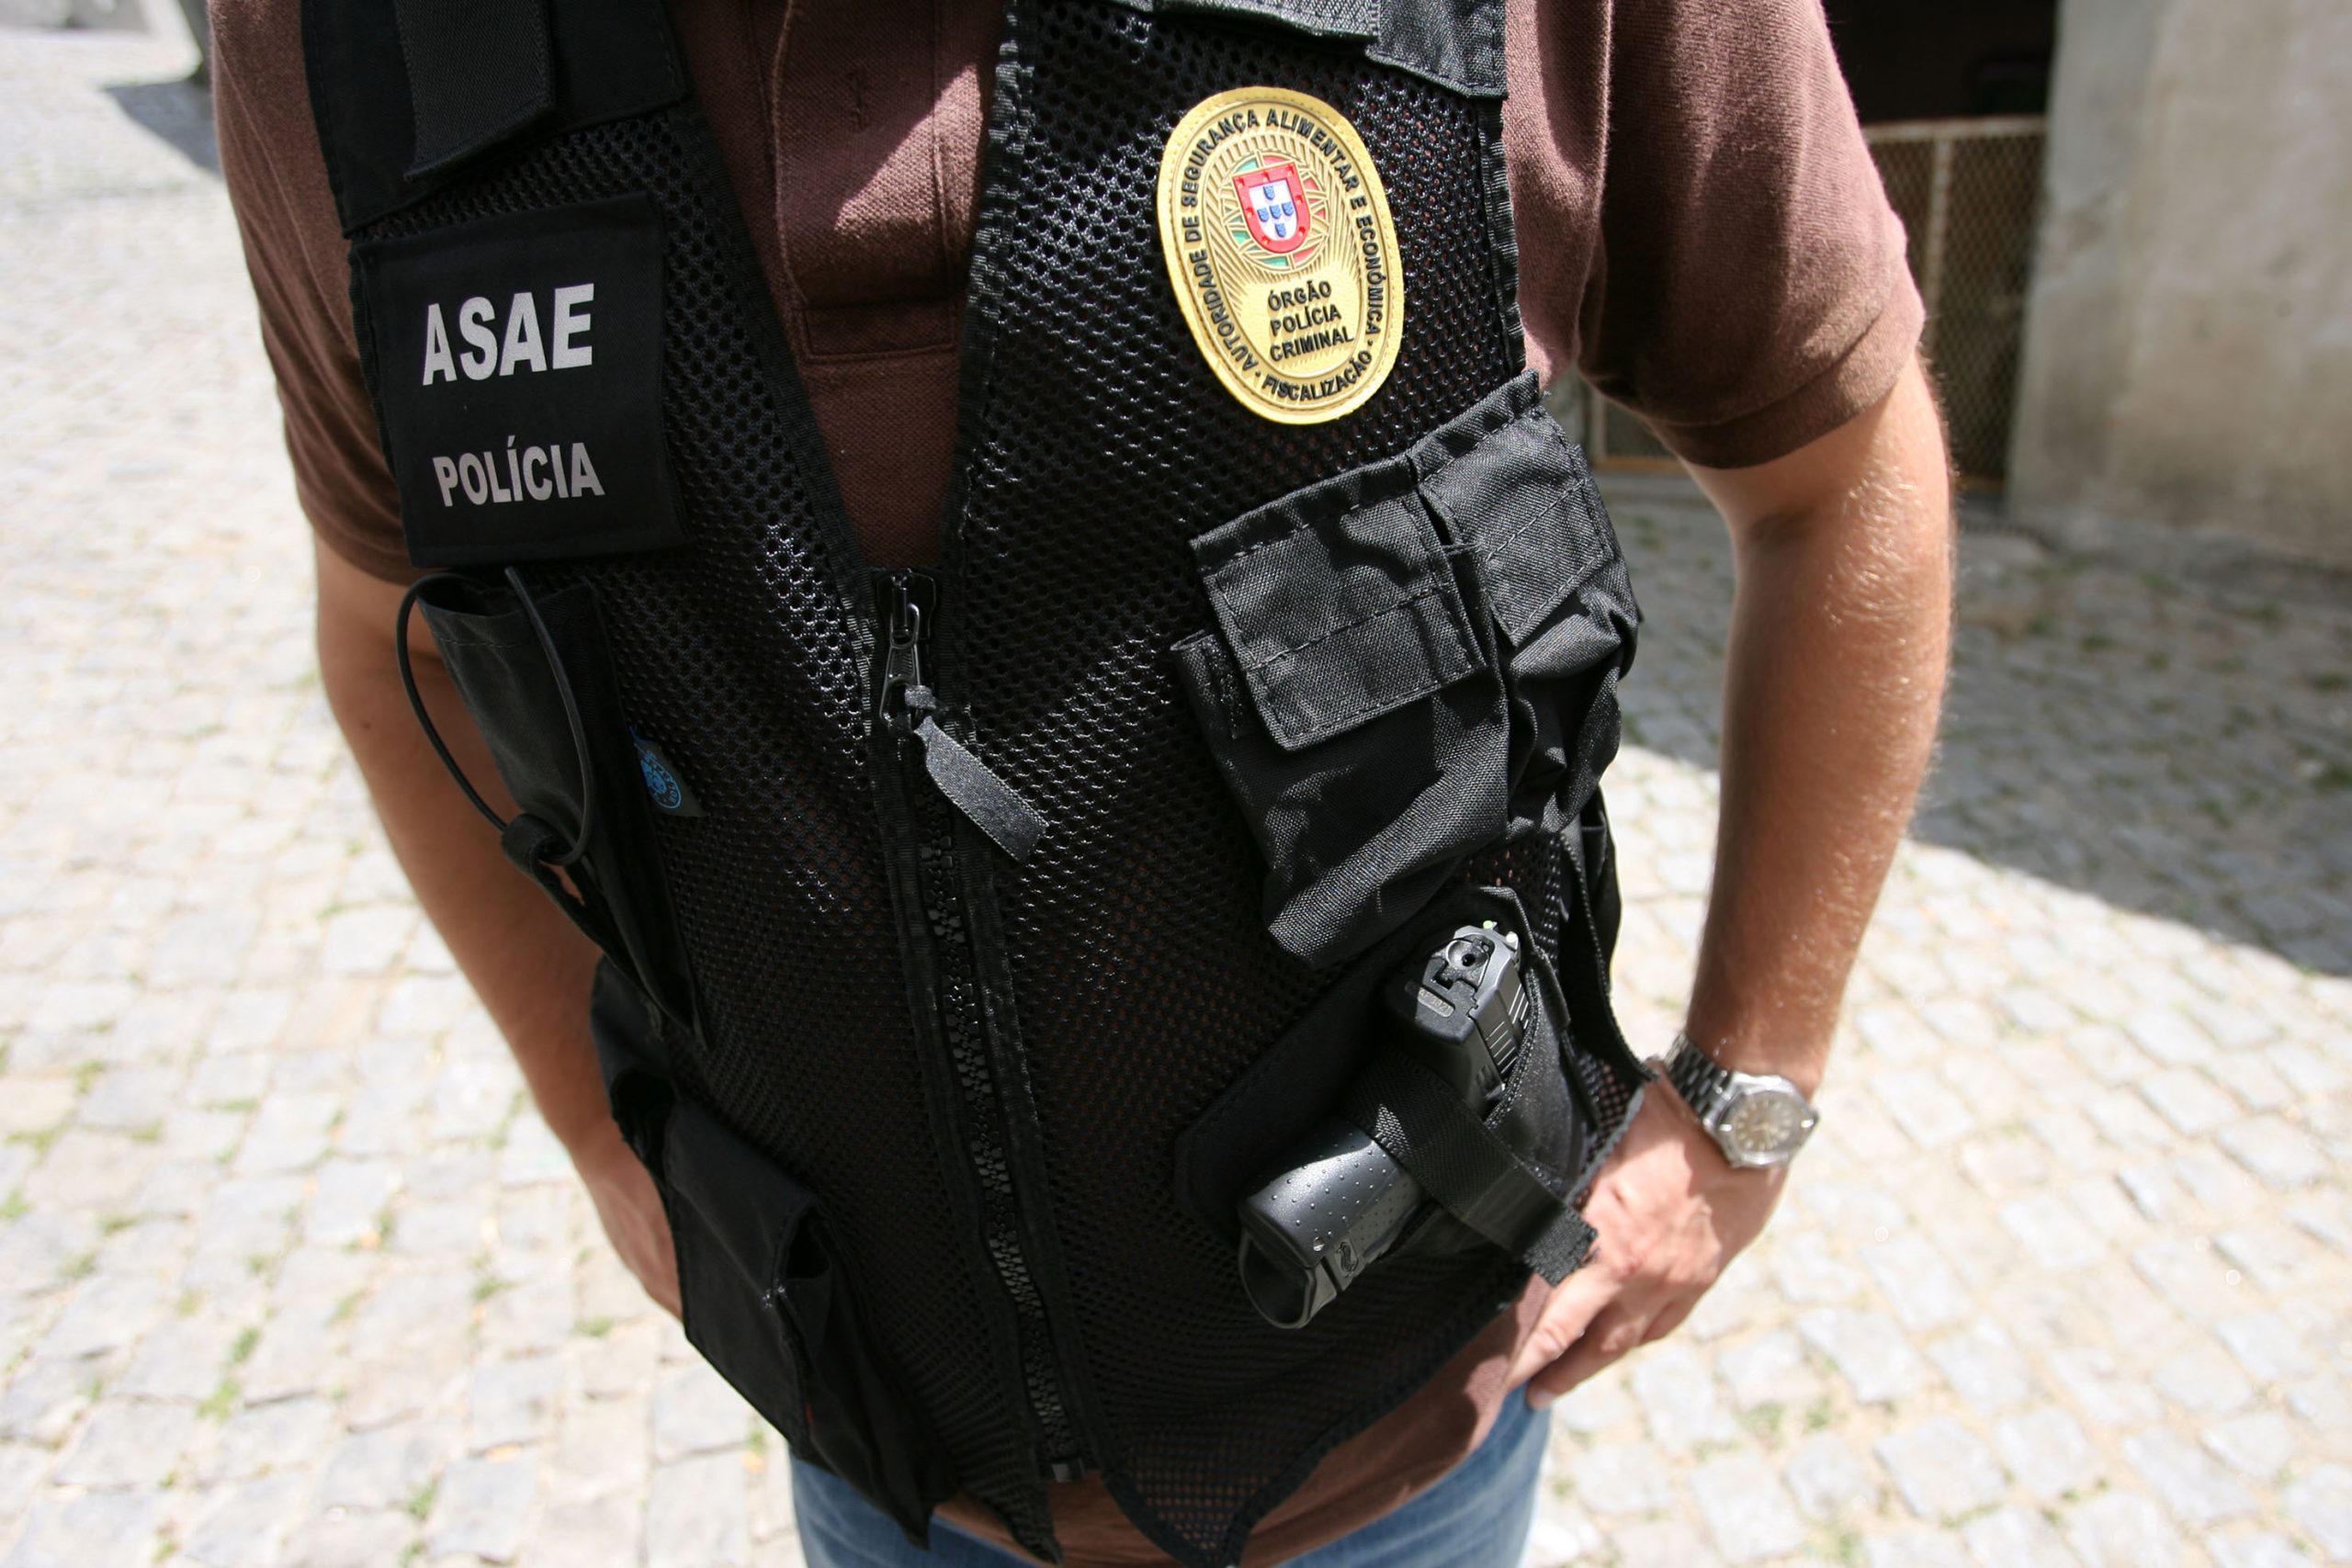 ASAE fecha 16 restaurantes ilegais em zona turística de Lisboa